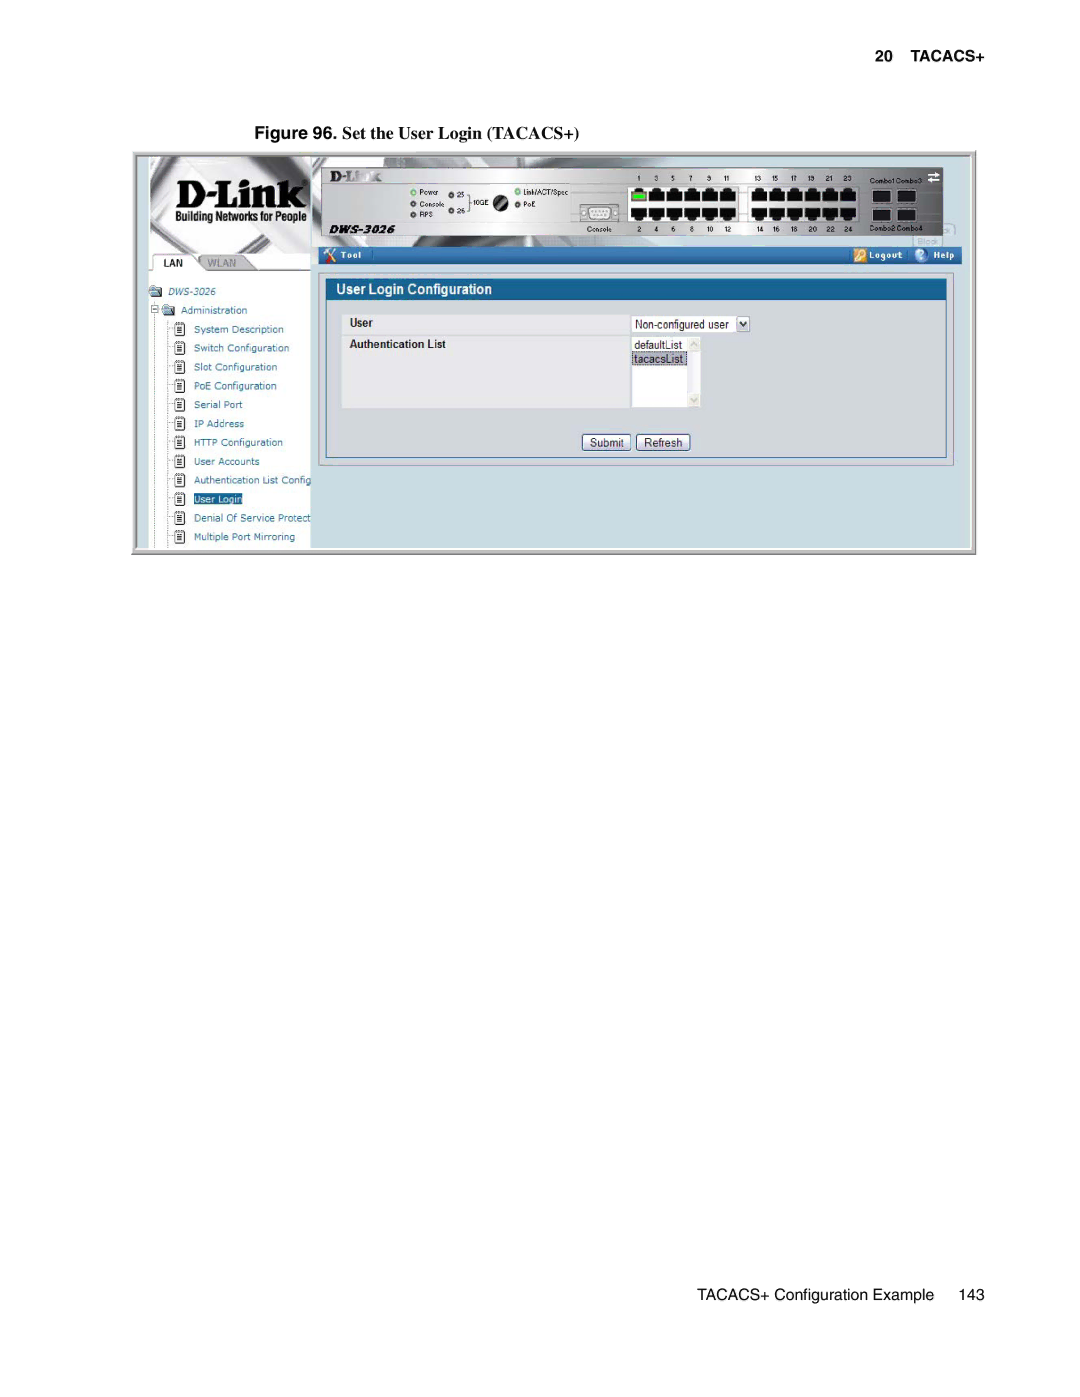 D-Link DWS-3000 manual Set the User Login TACACS+ 